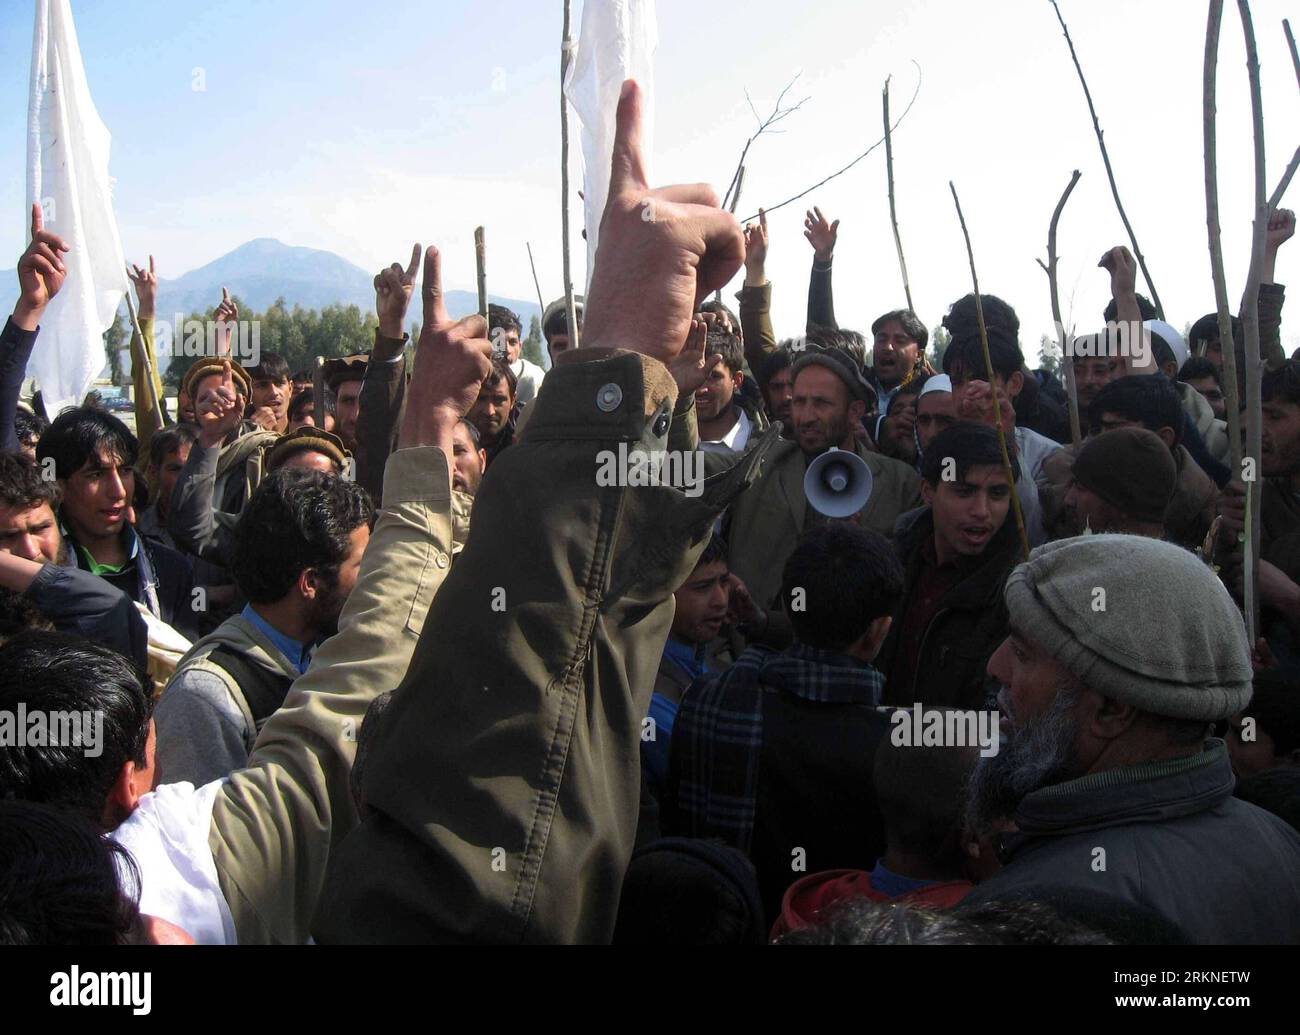 Bildnummer : 57107047 Datum : 25.02.2012 Copyright : imago/Xinhua (120225) -- KABOUL, 25 février 2012 (Xinhua) -- des manifestants afghans prennent part à une manifestation contre la profanation du Coran dans la province de Laghman, Afghanistan, le 25 février 2012. La manifestation contre l'incendie du Coran dans la province de Laghman, à 90 km à l'est de la capitale Kaboul, a repris samedi et a dégénéré en violence lorsque des coups de feu ont été entendus. (Xinhua/Tahir Safi) (dzl) AFGHANISTAN-KABUL-CORAN-PROTEST PUBLICATIONxNOTxINxINxCHN Gesellschaft Demo Protest Coran Verbrennung Koranverbrennung Premiumd x0x 2012 quer 57107047 Date 25 02 2012 Copyright Imago Banque D'Images